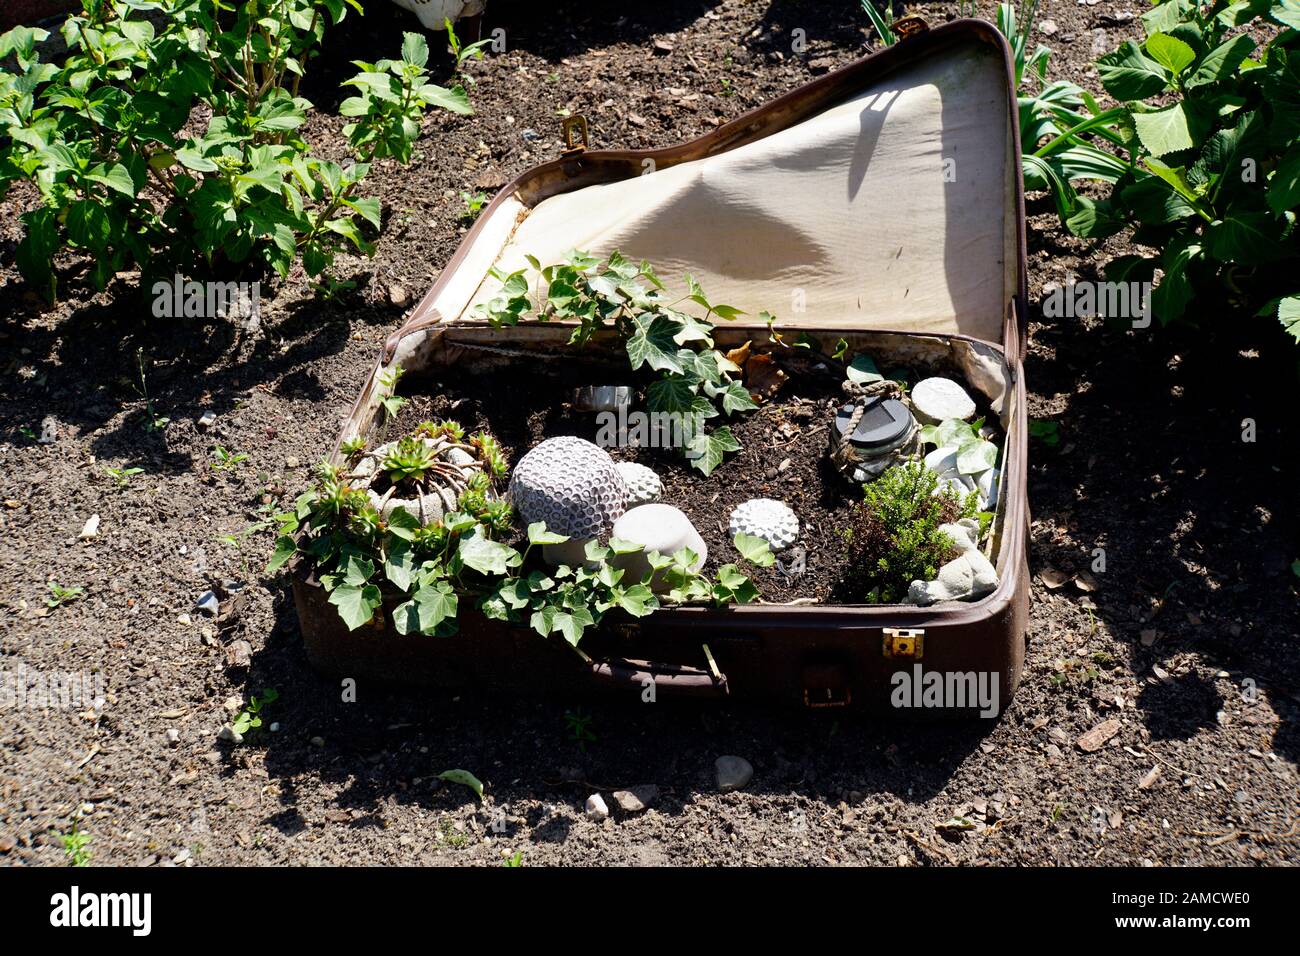 lustige Dekoration im Garten - Minigarten in einem Reisekoffer Stock Photo  - Alamy